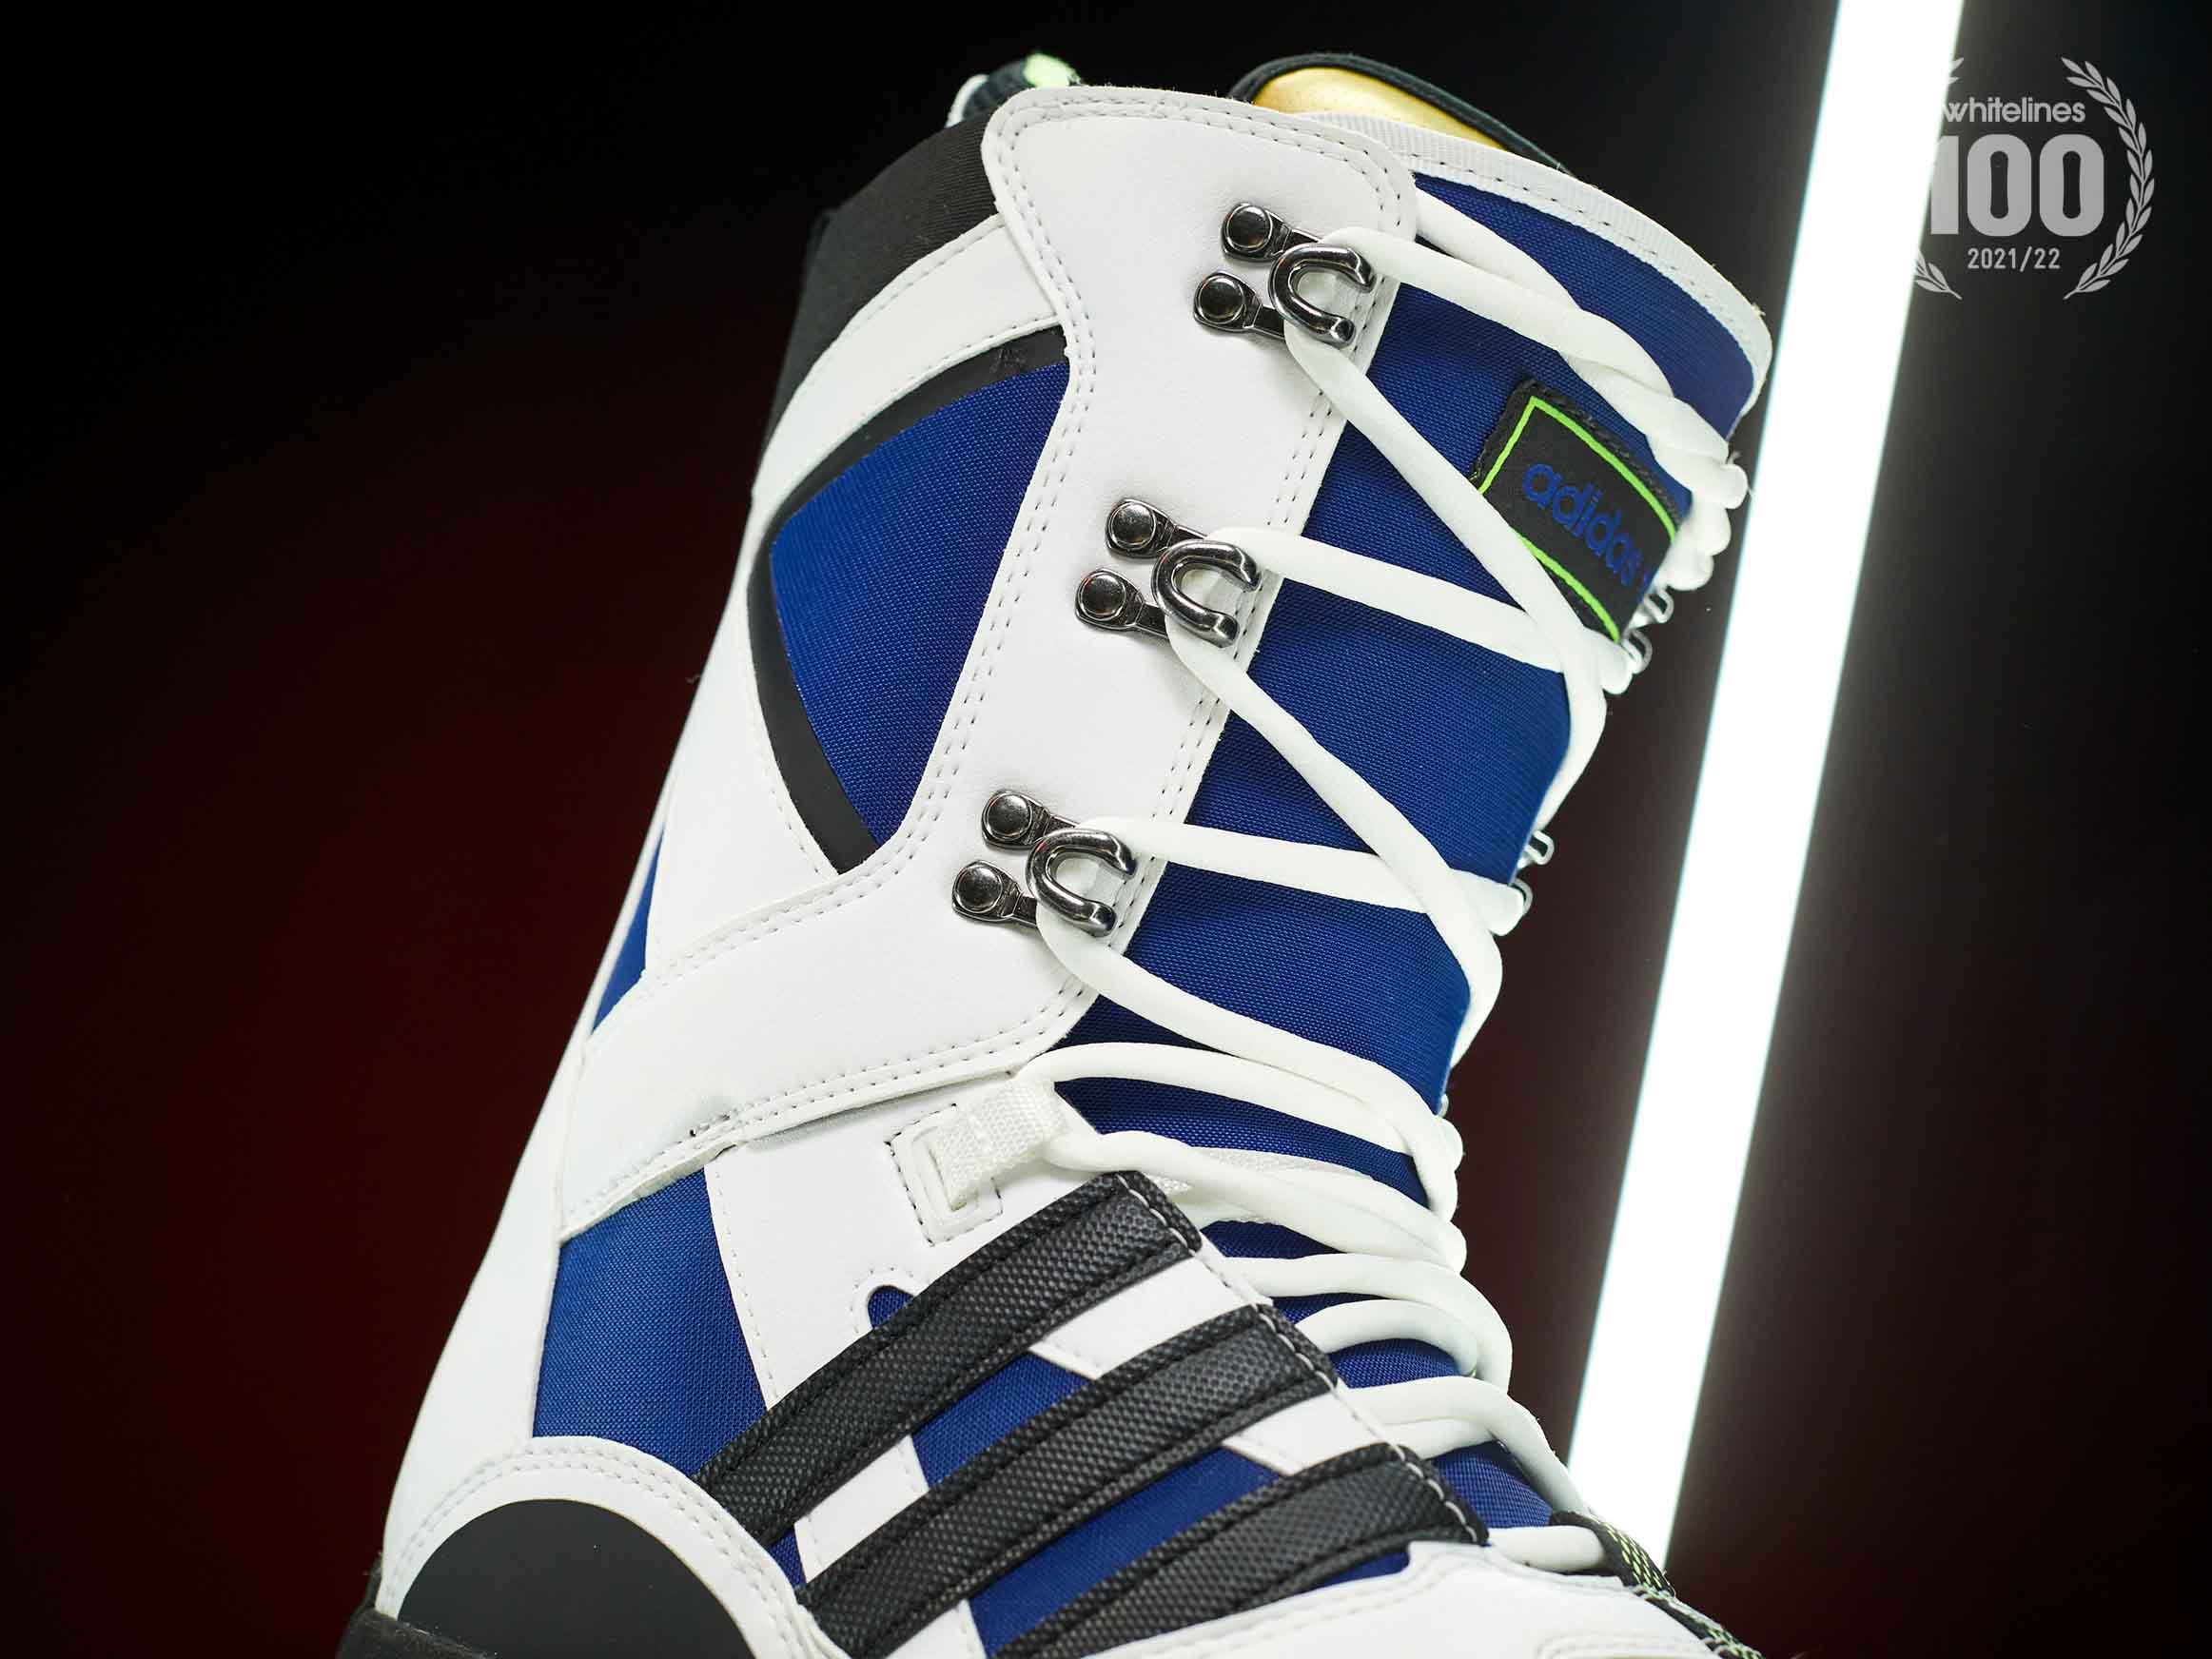 Adidas Tactical Lexicon ADV 2021-2022 Snowboard Boot